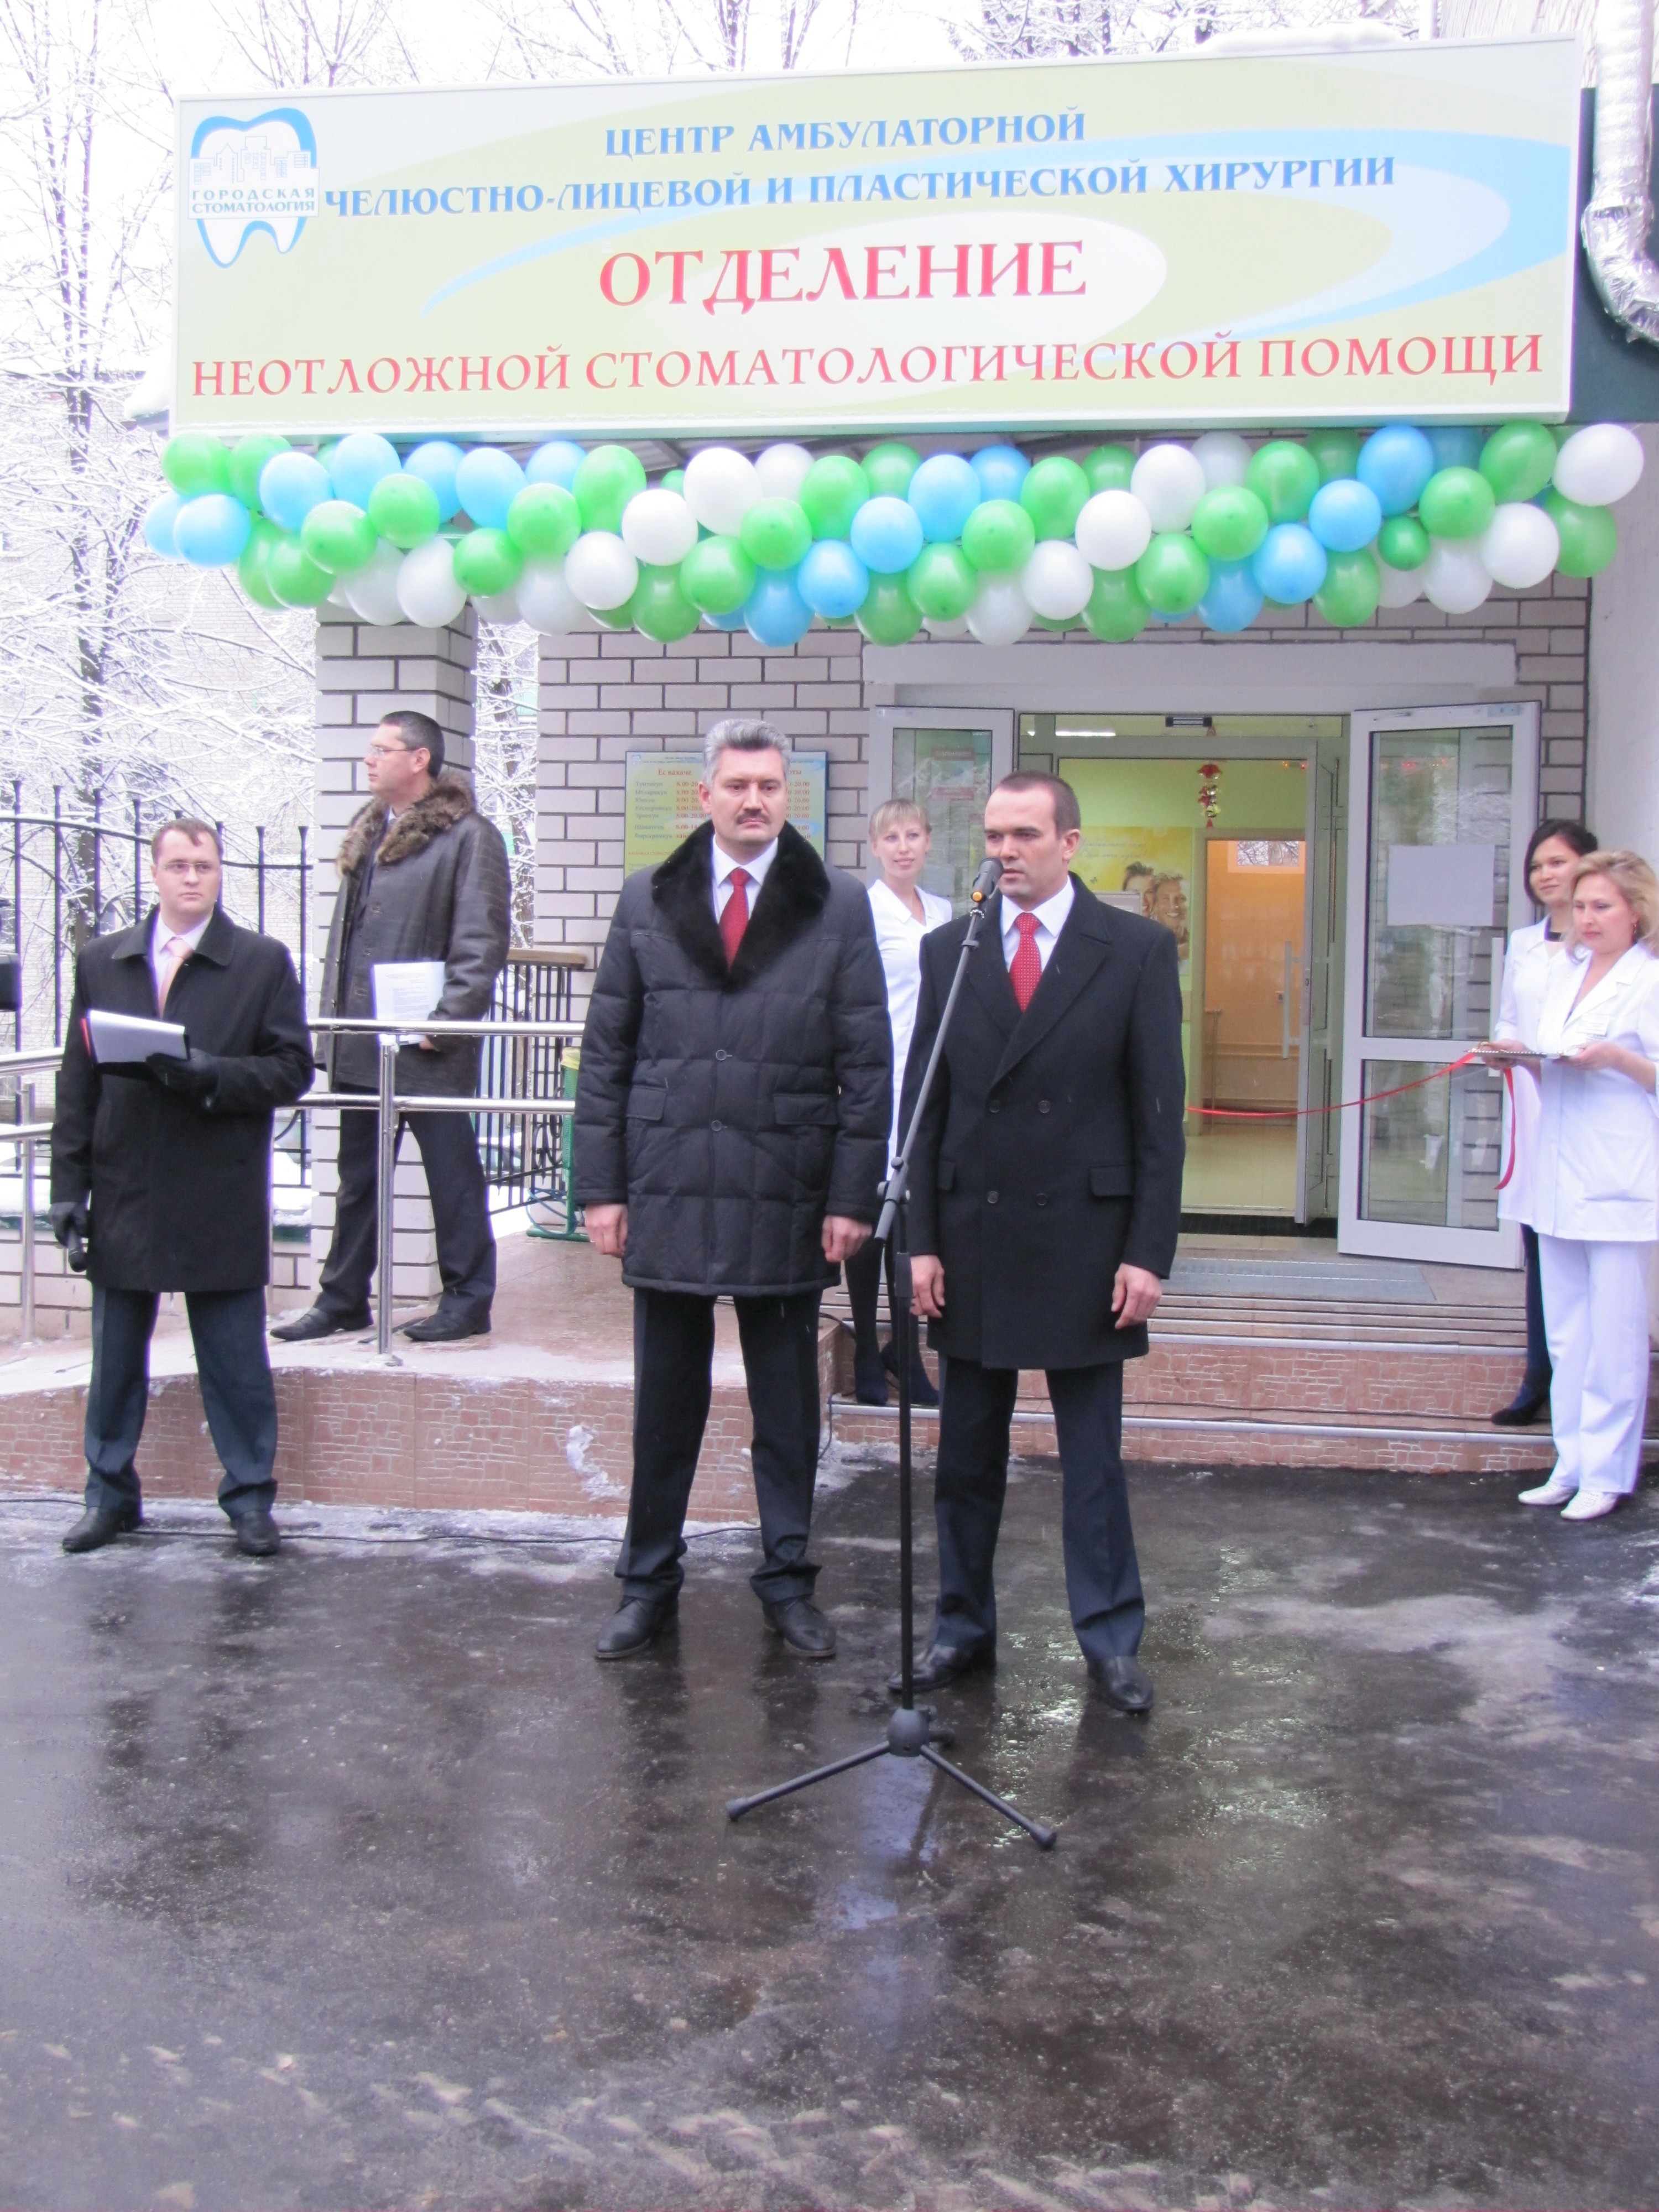 В Московском районе г. Чебоксары состоялось открытие отделения неотложной стоматологической помощи 